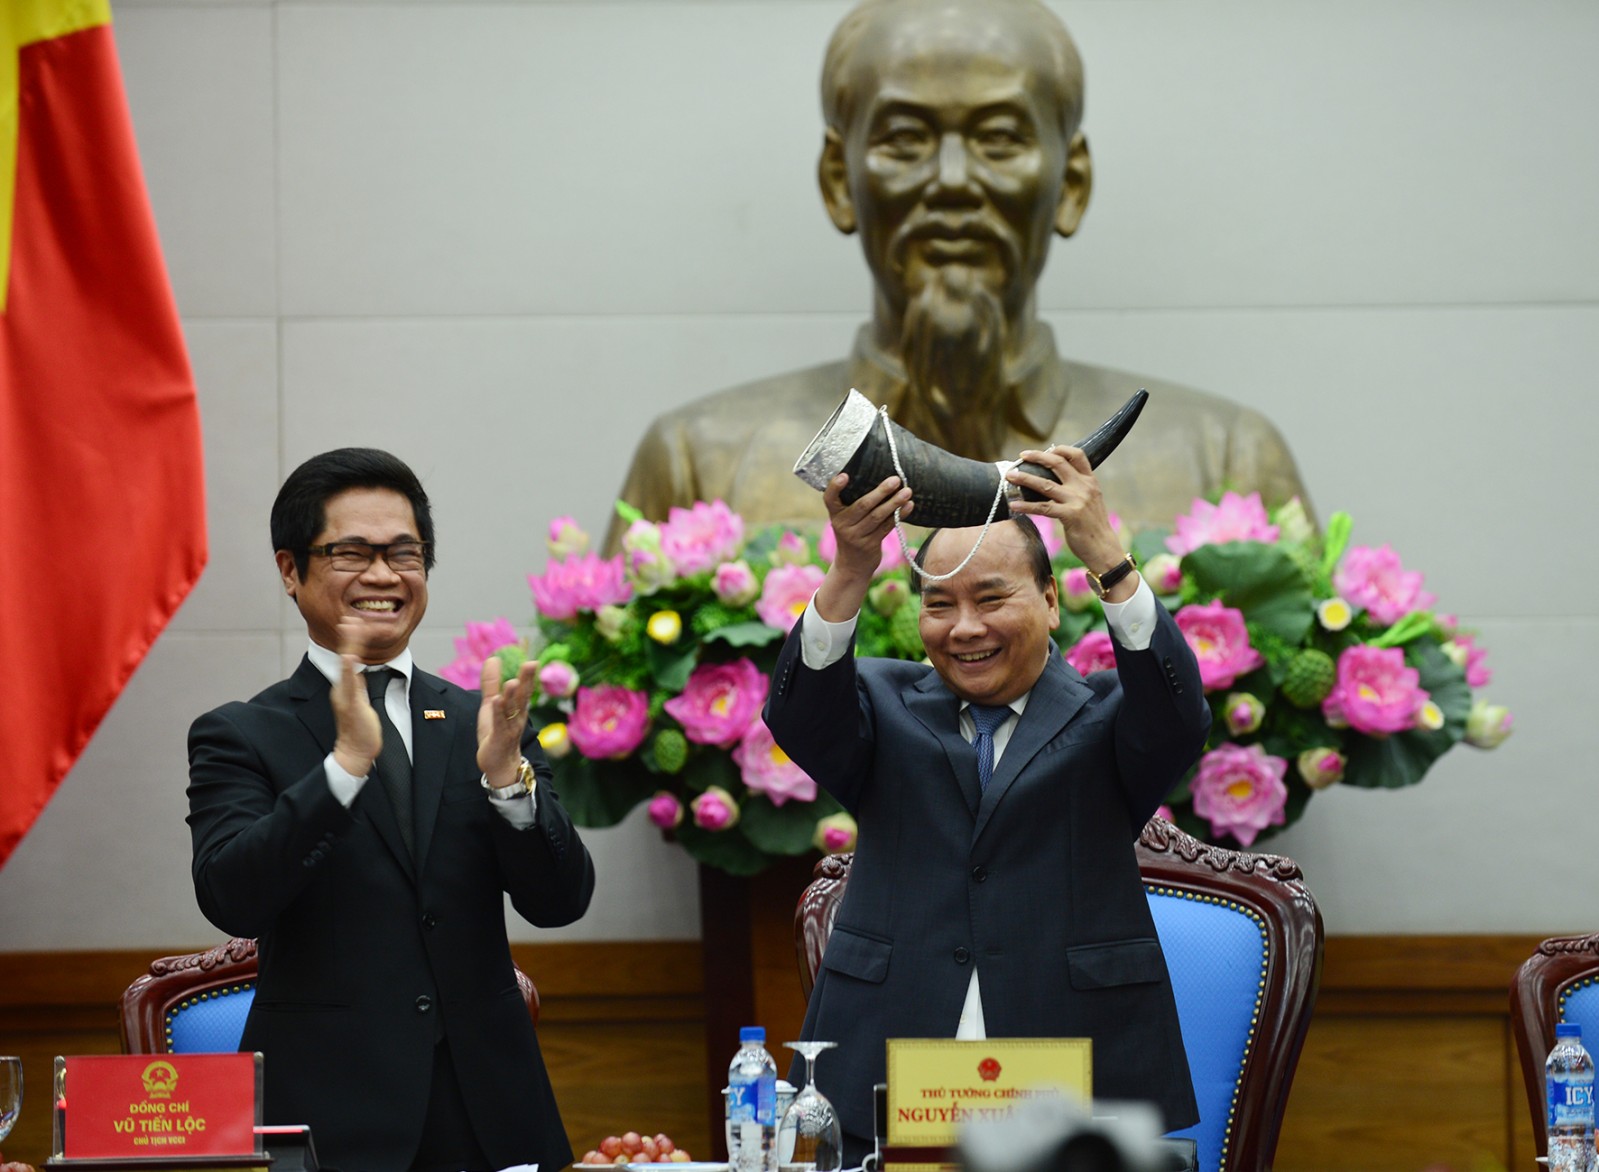 Chủ tịch VCCI Vũ Tiến Lộc thay mặt cộng đồng Doanh nghiệp Việt Nam tặng chiếc tù và cho Thủ tướng. Đây là biểu tượng cho người đứng đầu các hiệp hội doanh nghiêp trên cả nước.